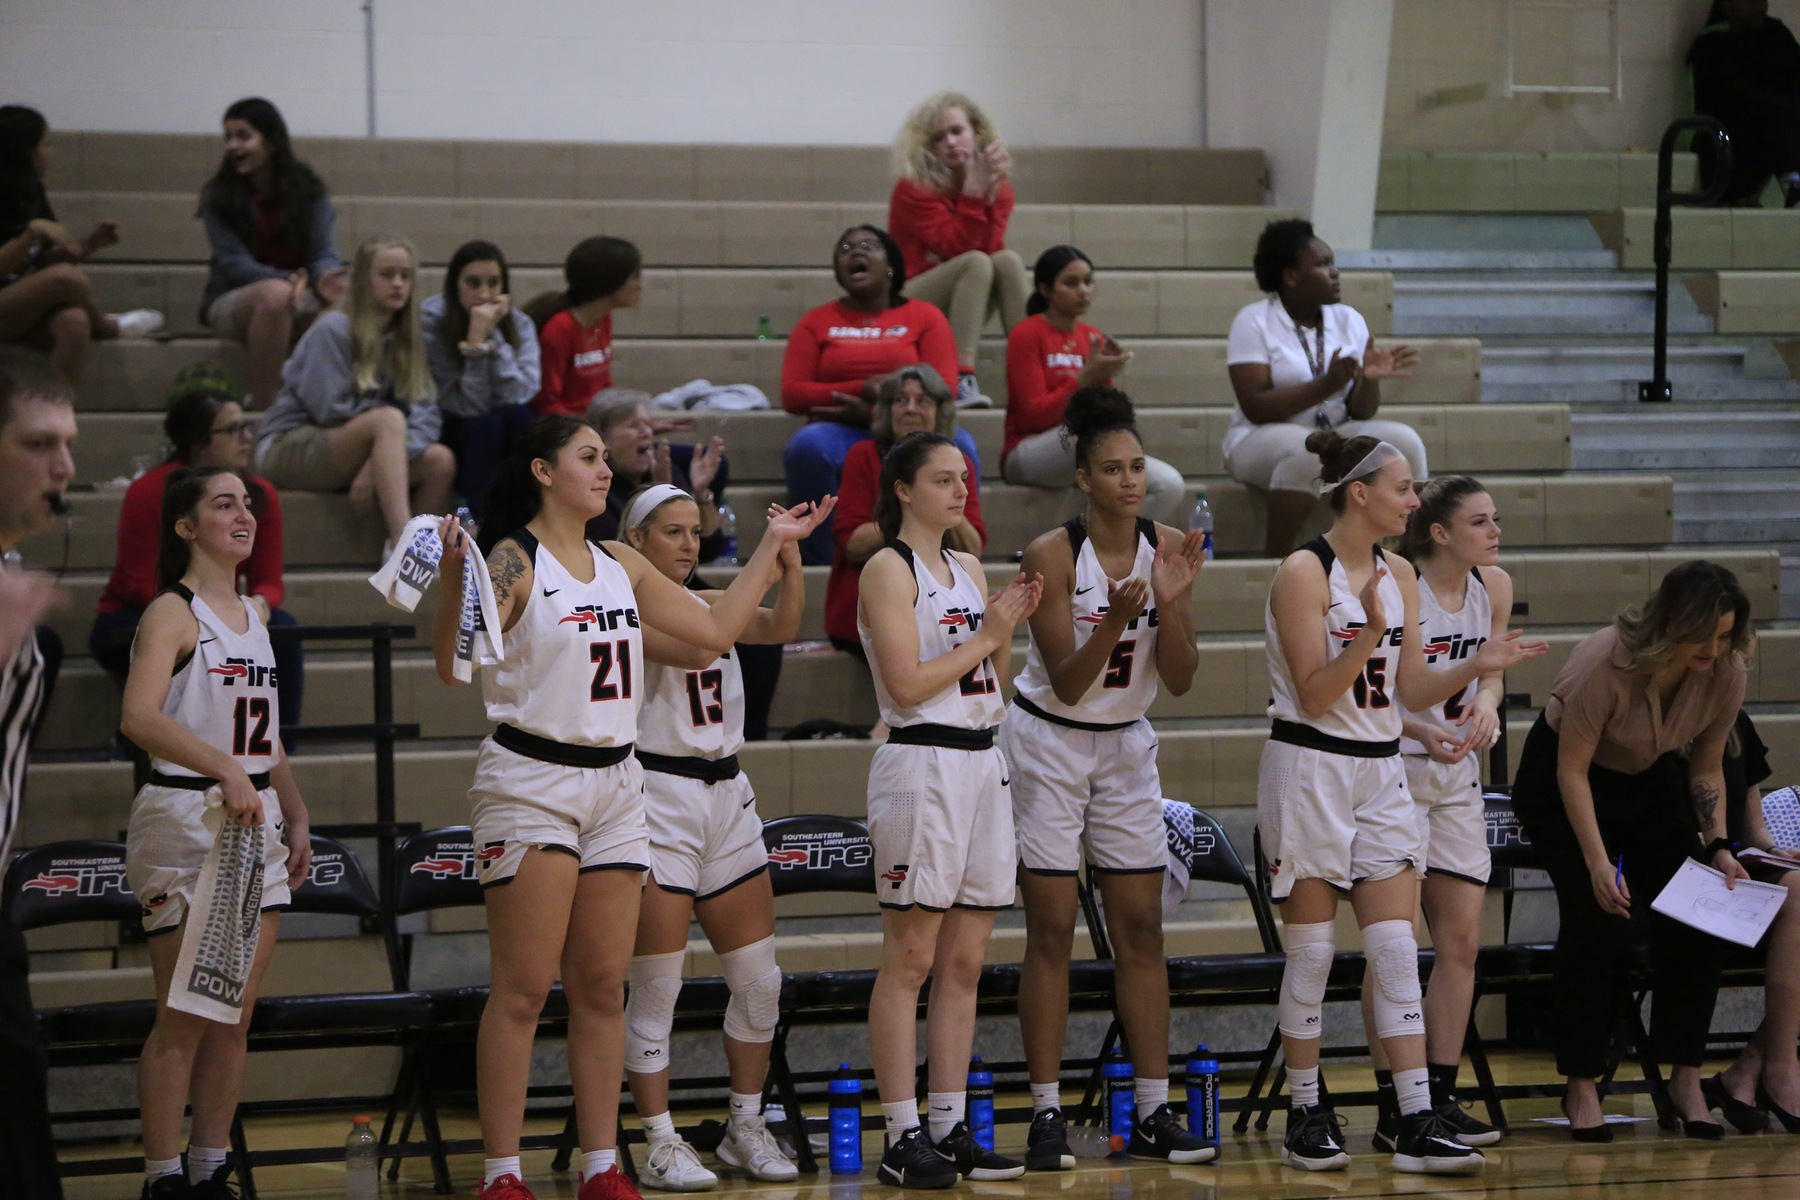 2019-20 NAIA Division II Women's Basketball Coaches' Top 25 Poll – No. 3